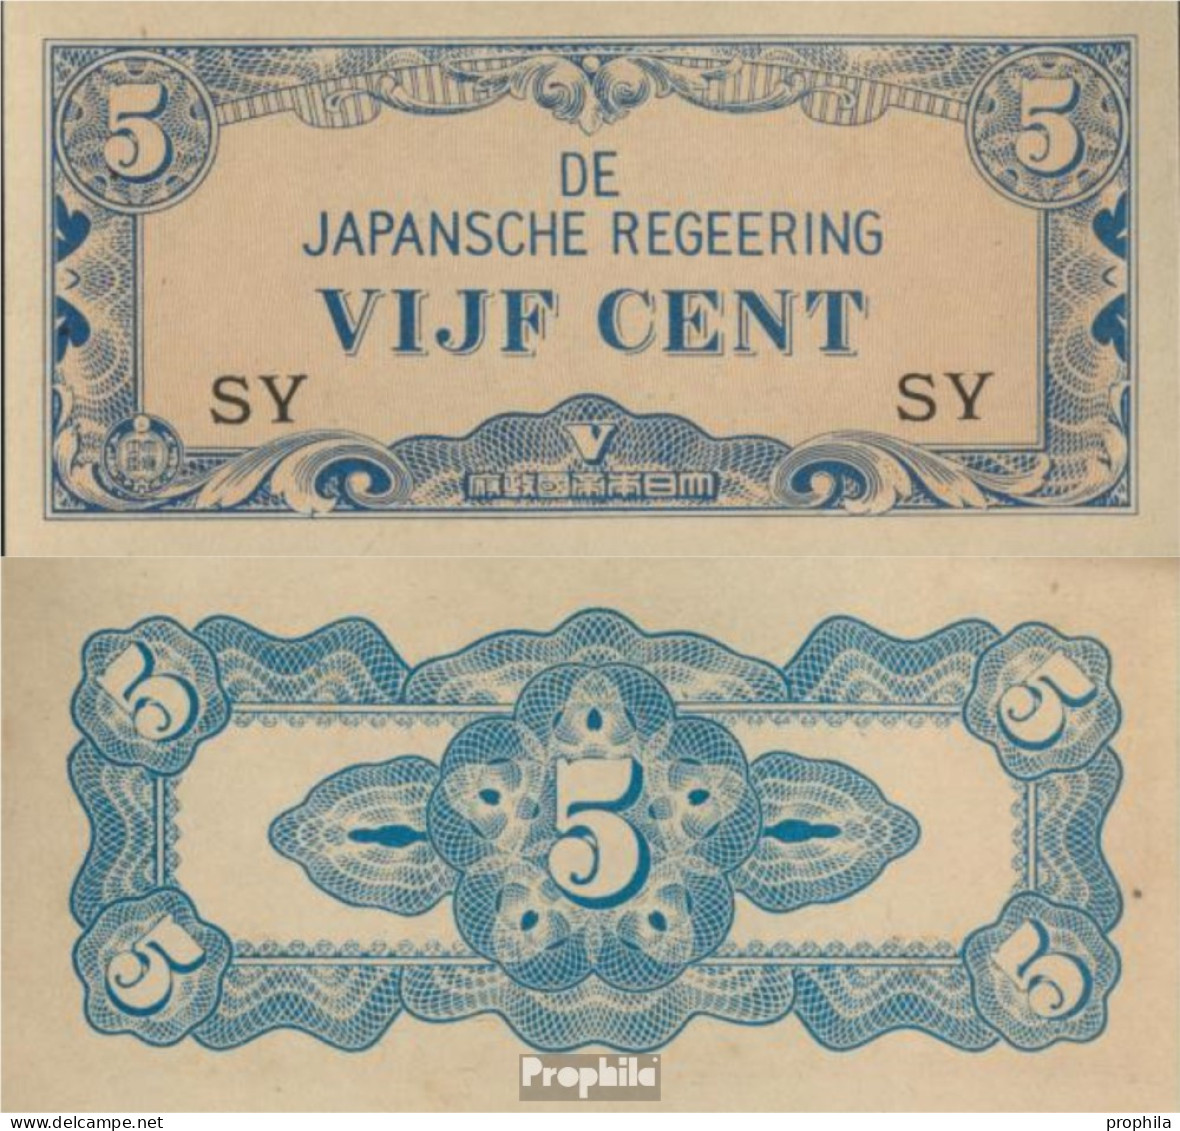 Niederländisch Ost-Indien Pick-Nr: 120b Bankfrisch 1942 5 Cent - Indes Néerlandaises